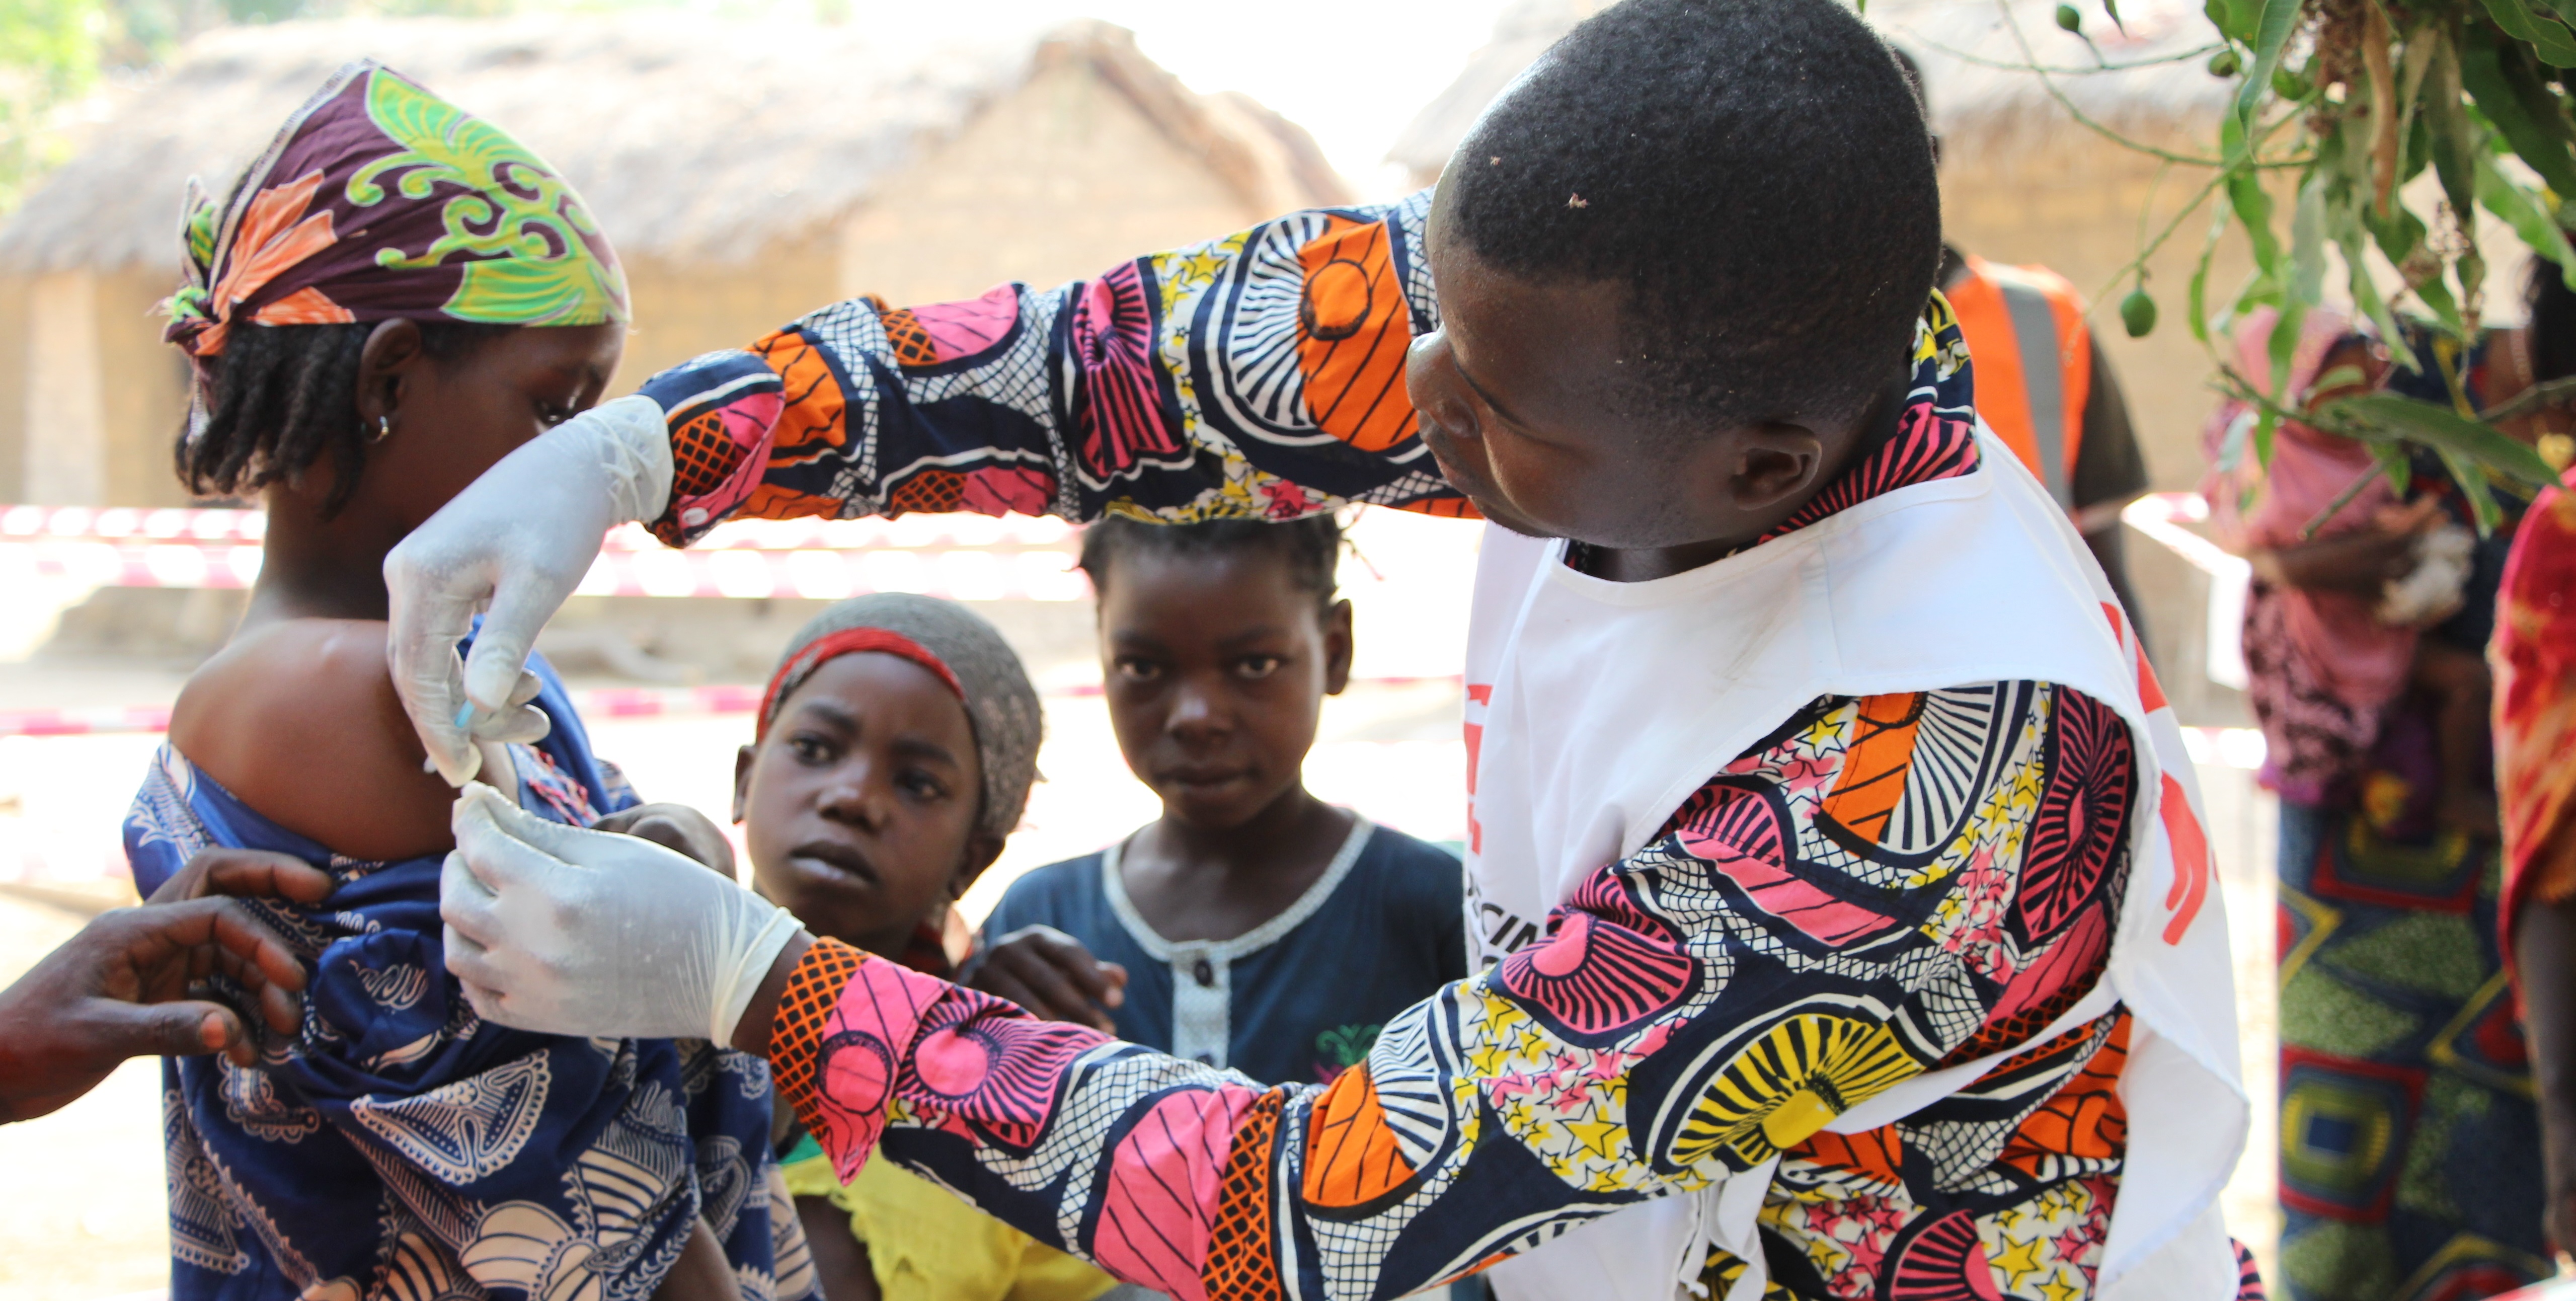 An vielen Orten auf der Welt sind humanitäre Helfer im Einsatz, zum Beispiel hier in dem Land Tschad in Afrika. (Foto: dpa)